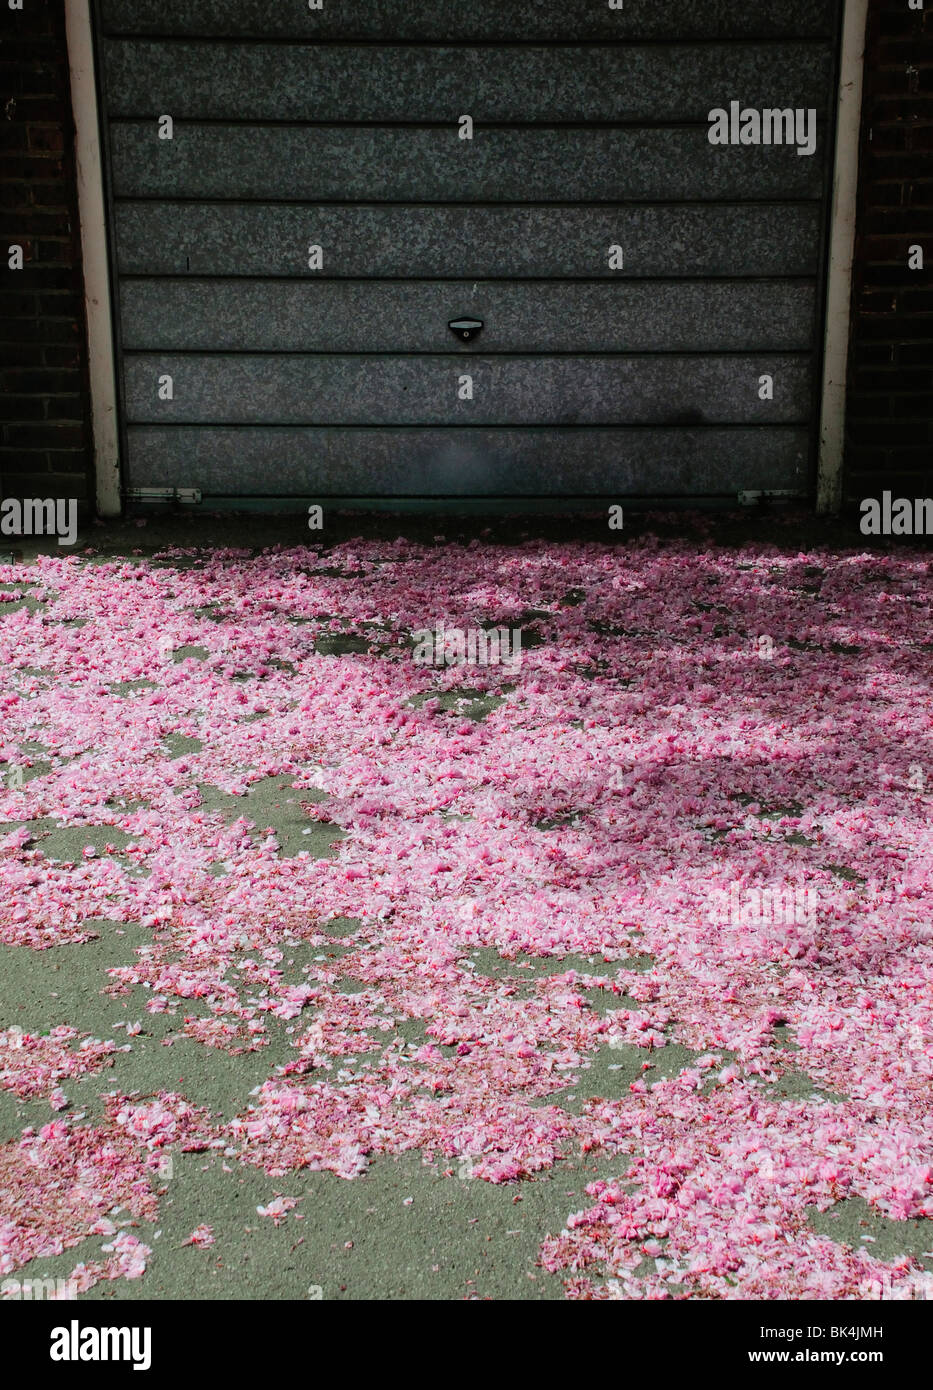 Dispersión de flor rosa caído en el suelo delante de la puerta de garaje de metal Foto de stock